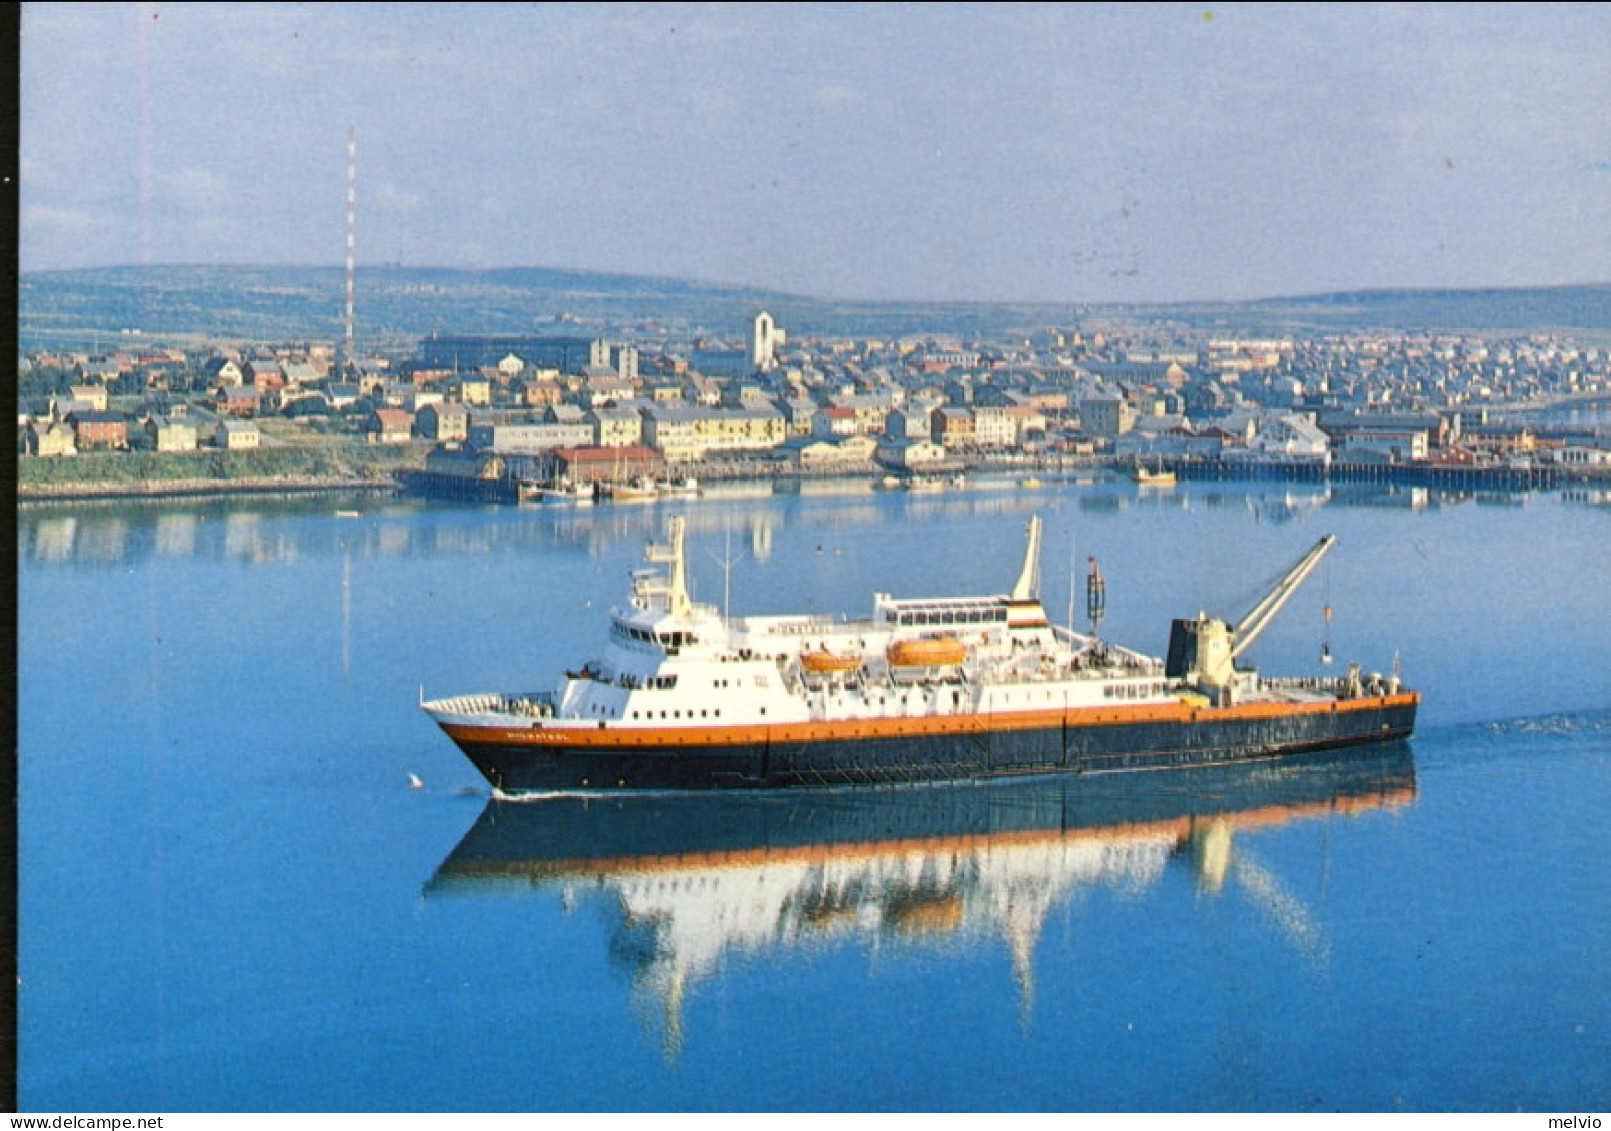 1986-Norvegia Cartolina Illustrata Volo Transpolare Amunsen Ellsworth Nobile Cac - Briefe U. Dokumente